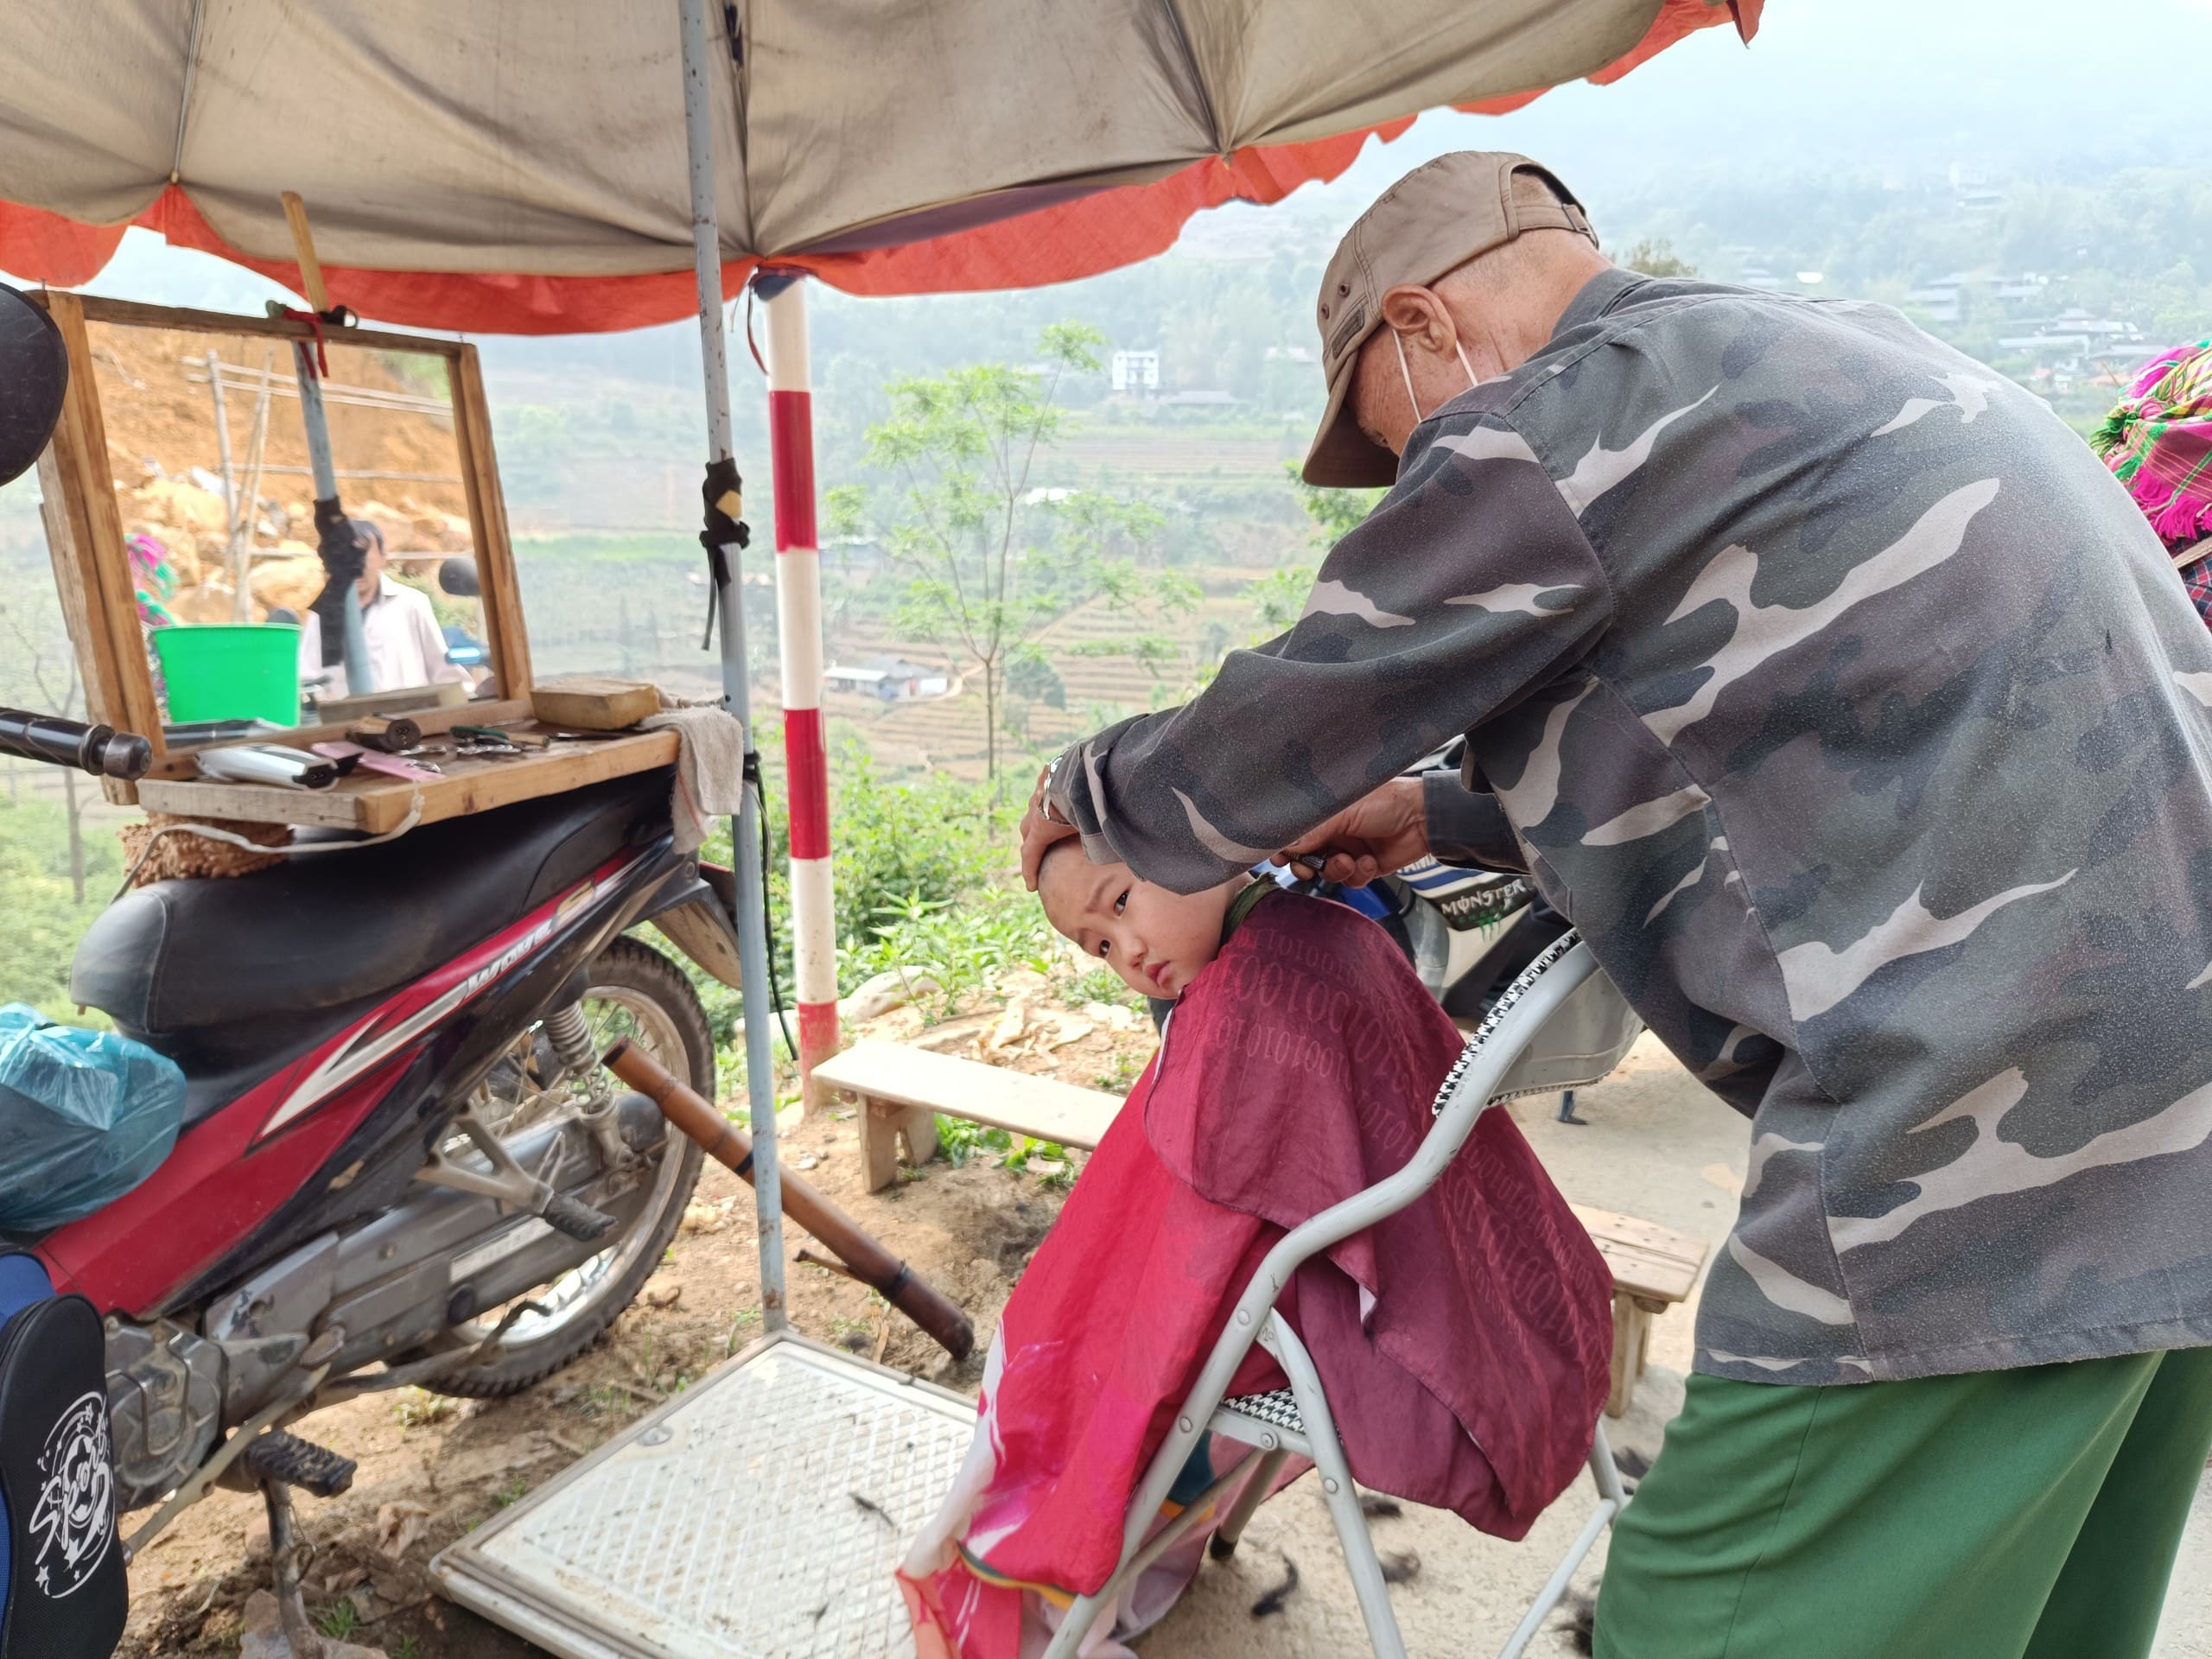 marché de can cau, sapa, vie quotidienne des habitants locaux 